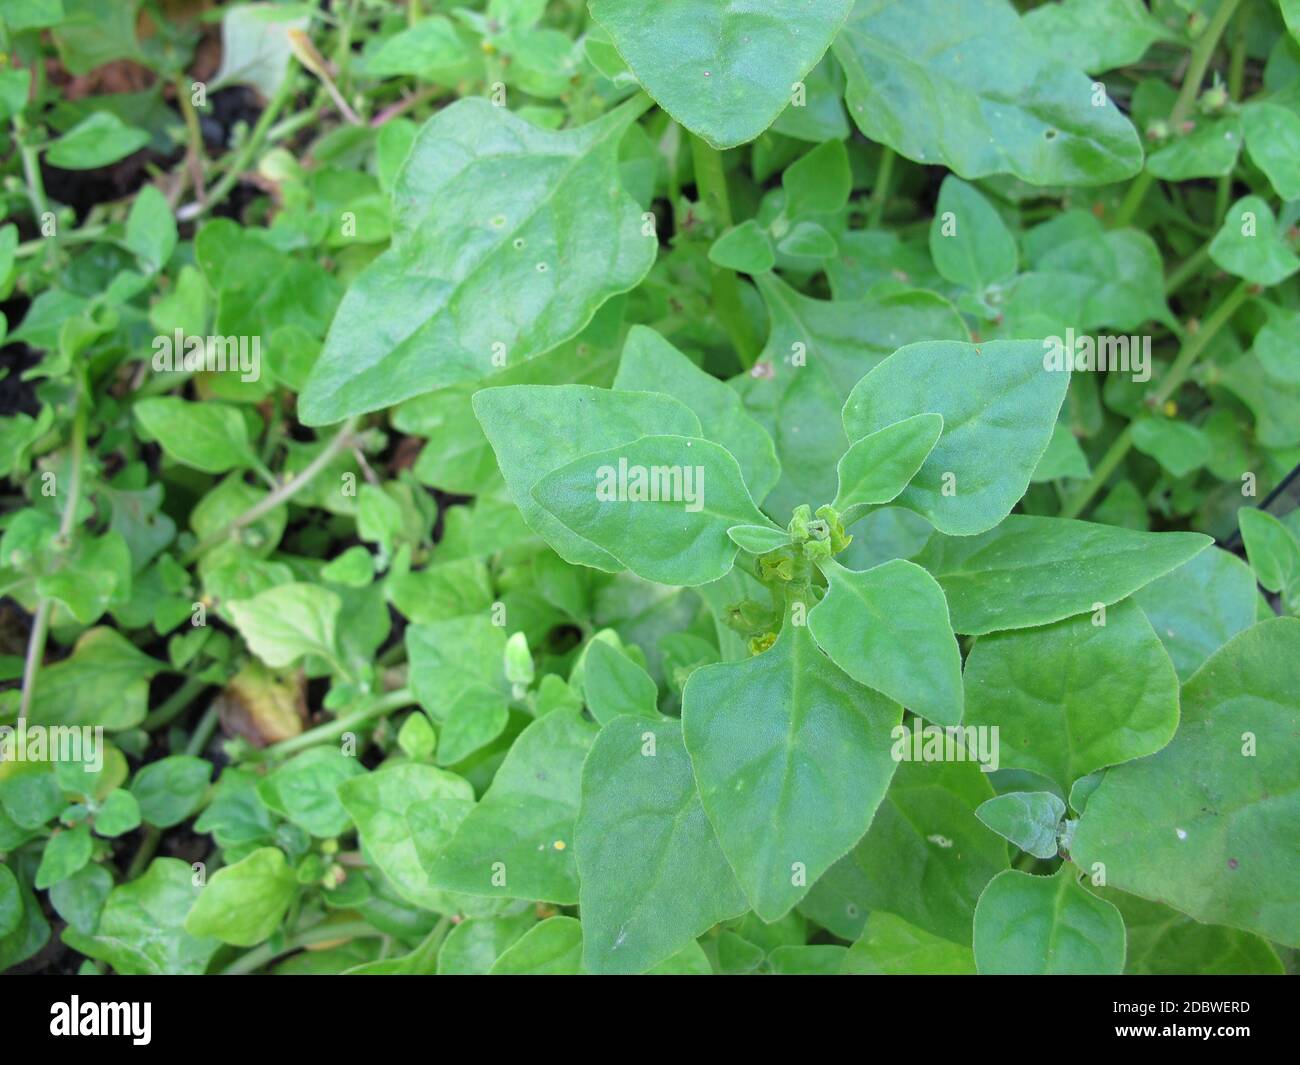 New Zealand spinach, Tetragonia tetragonioides, in the garden Stock Photo